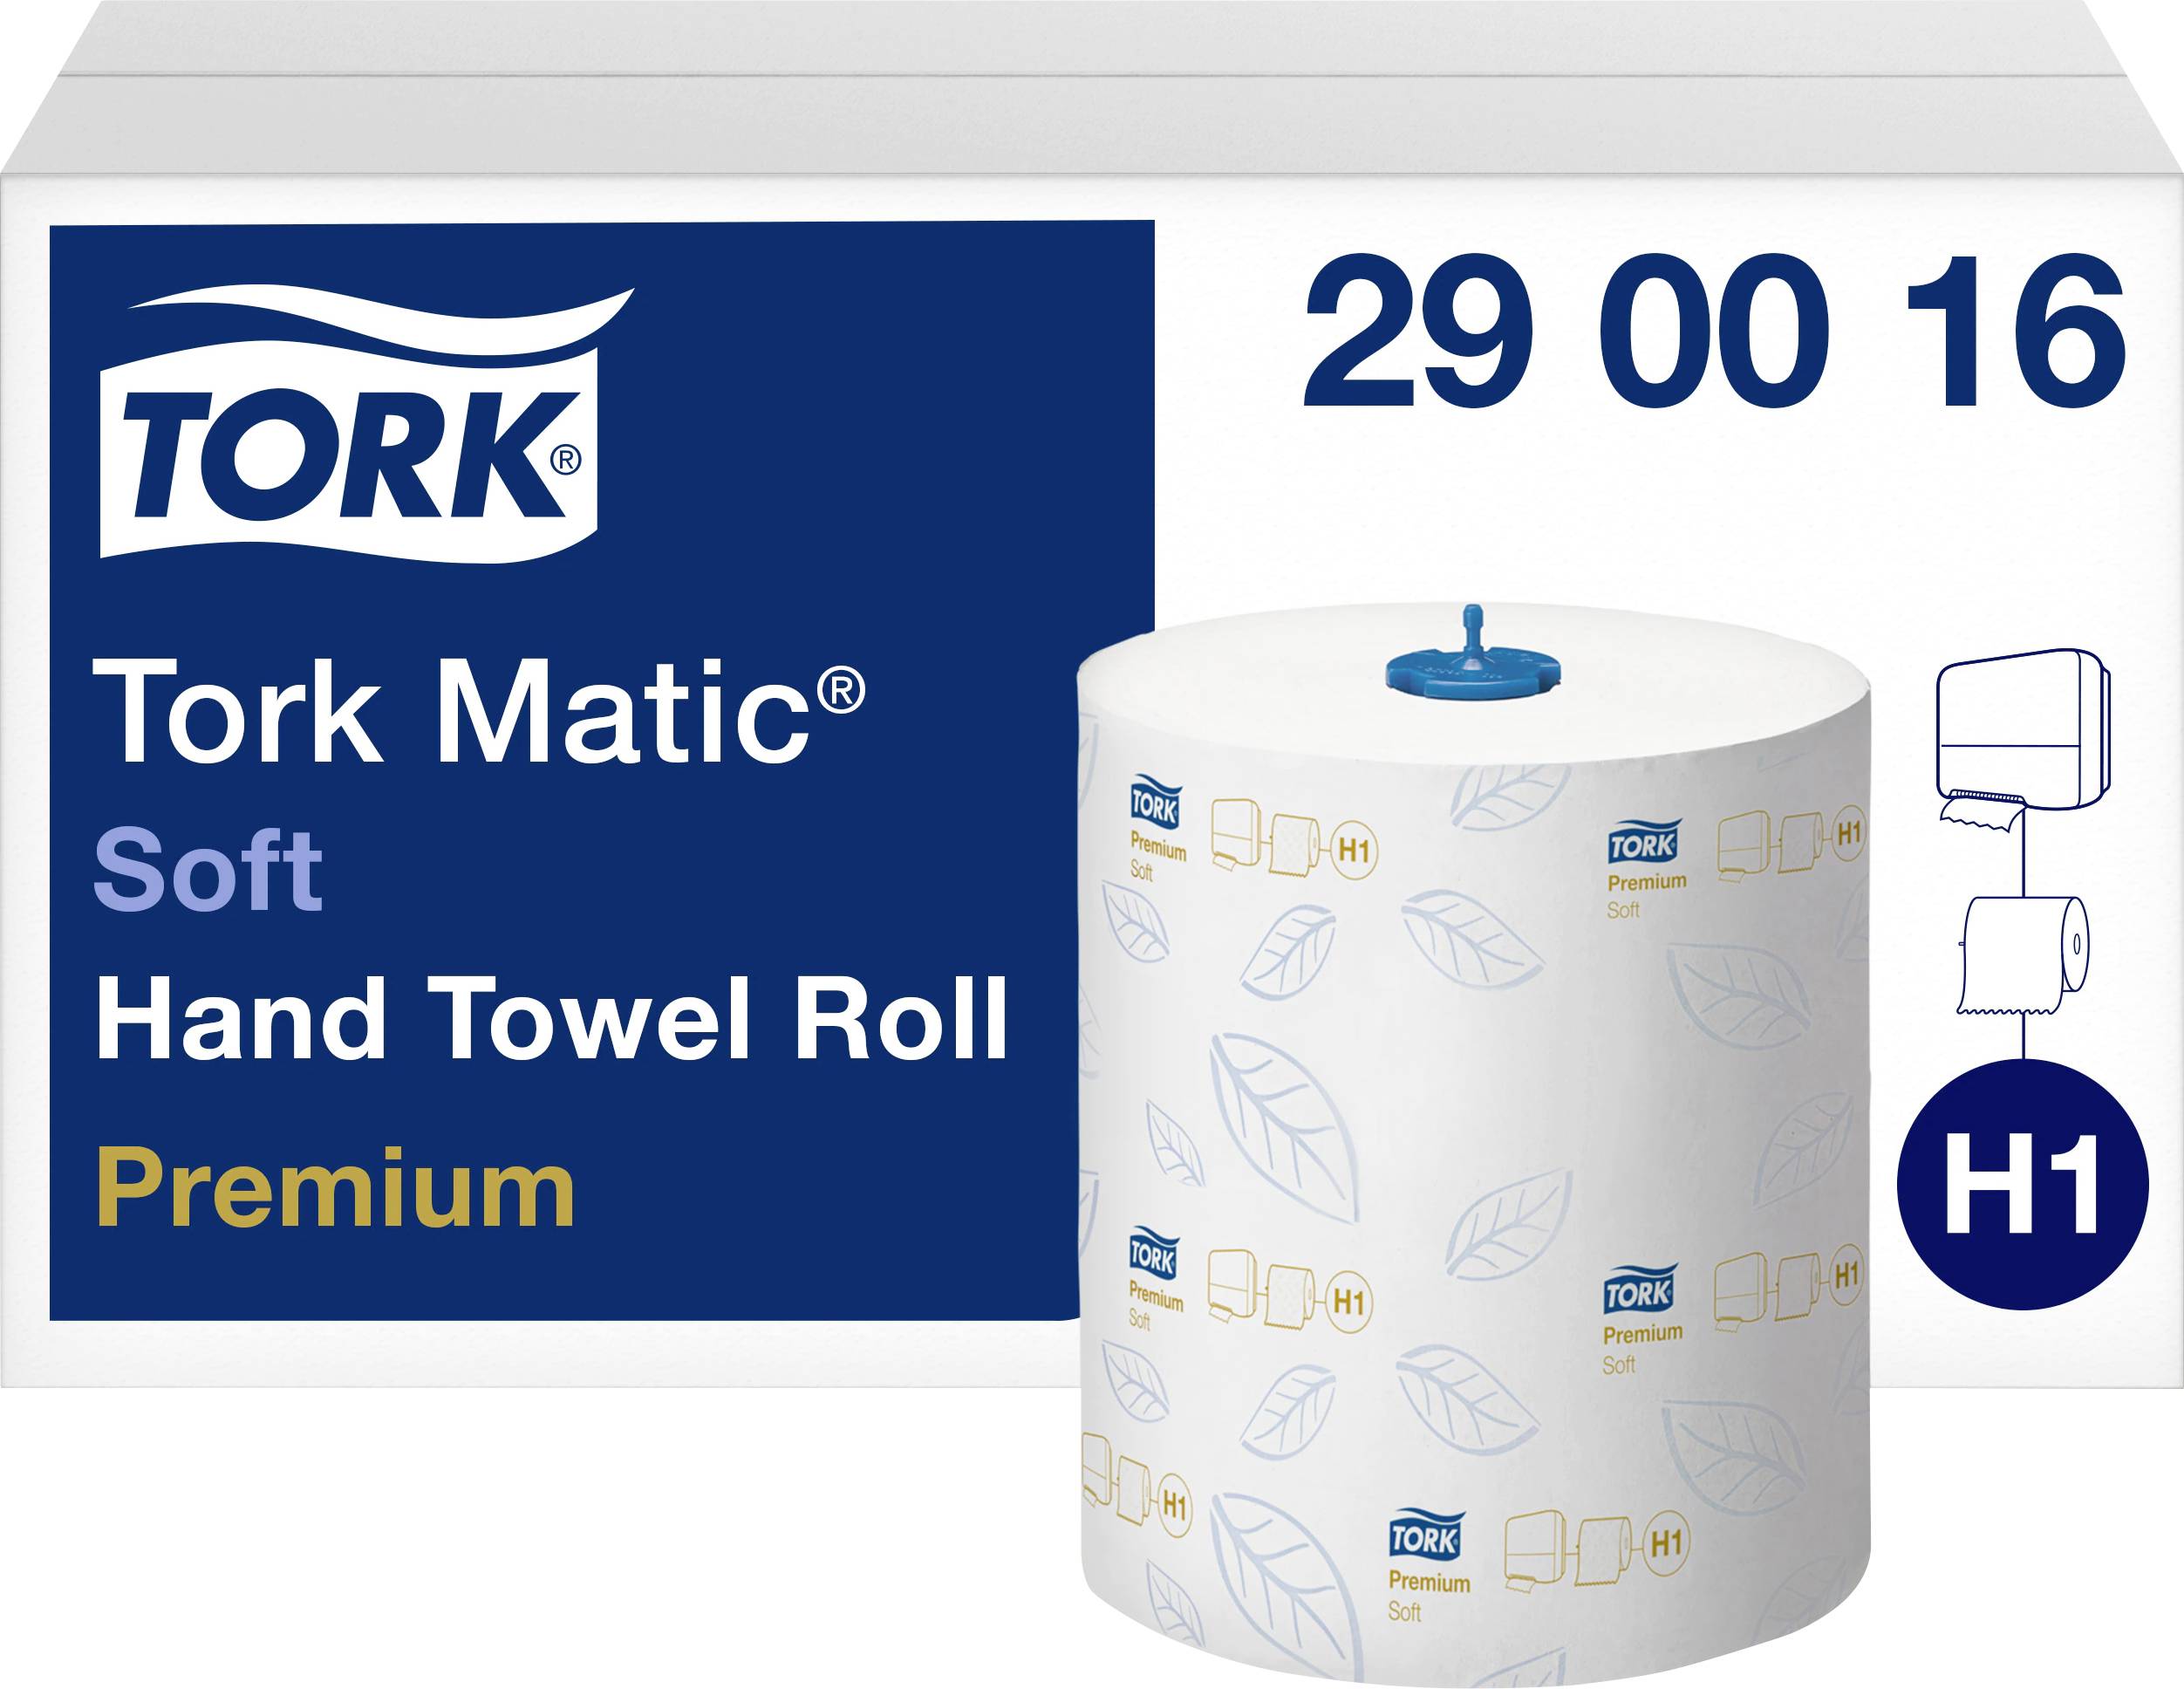 Полотенце h1. Полотенца бумажные Tork matic Premium 290016. Бумажные полотенца торк h1. Полотенца бумажные Pingo (белые), 2-сл рулон. Tork 110225.